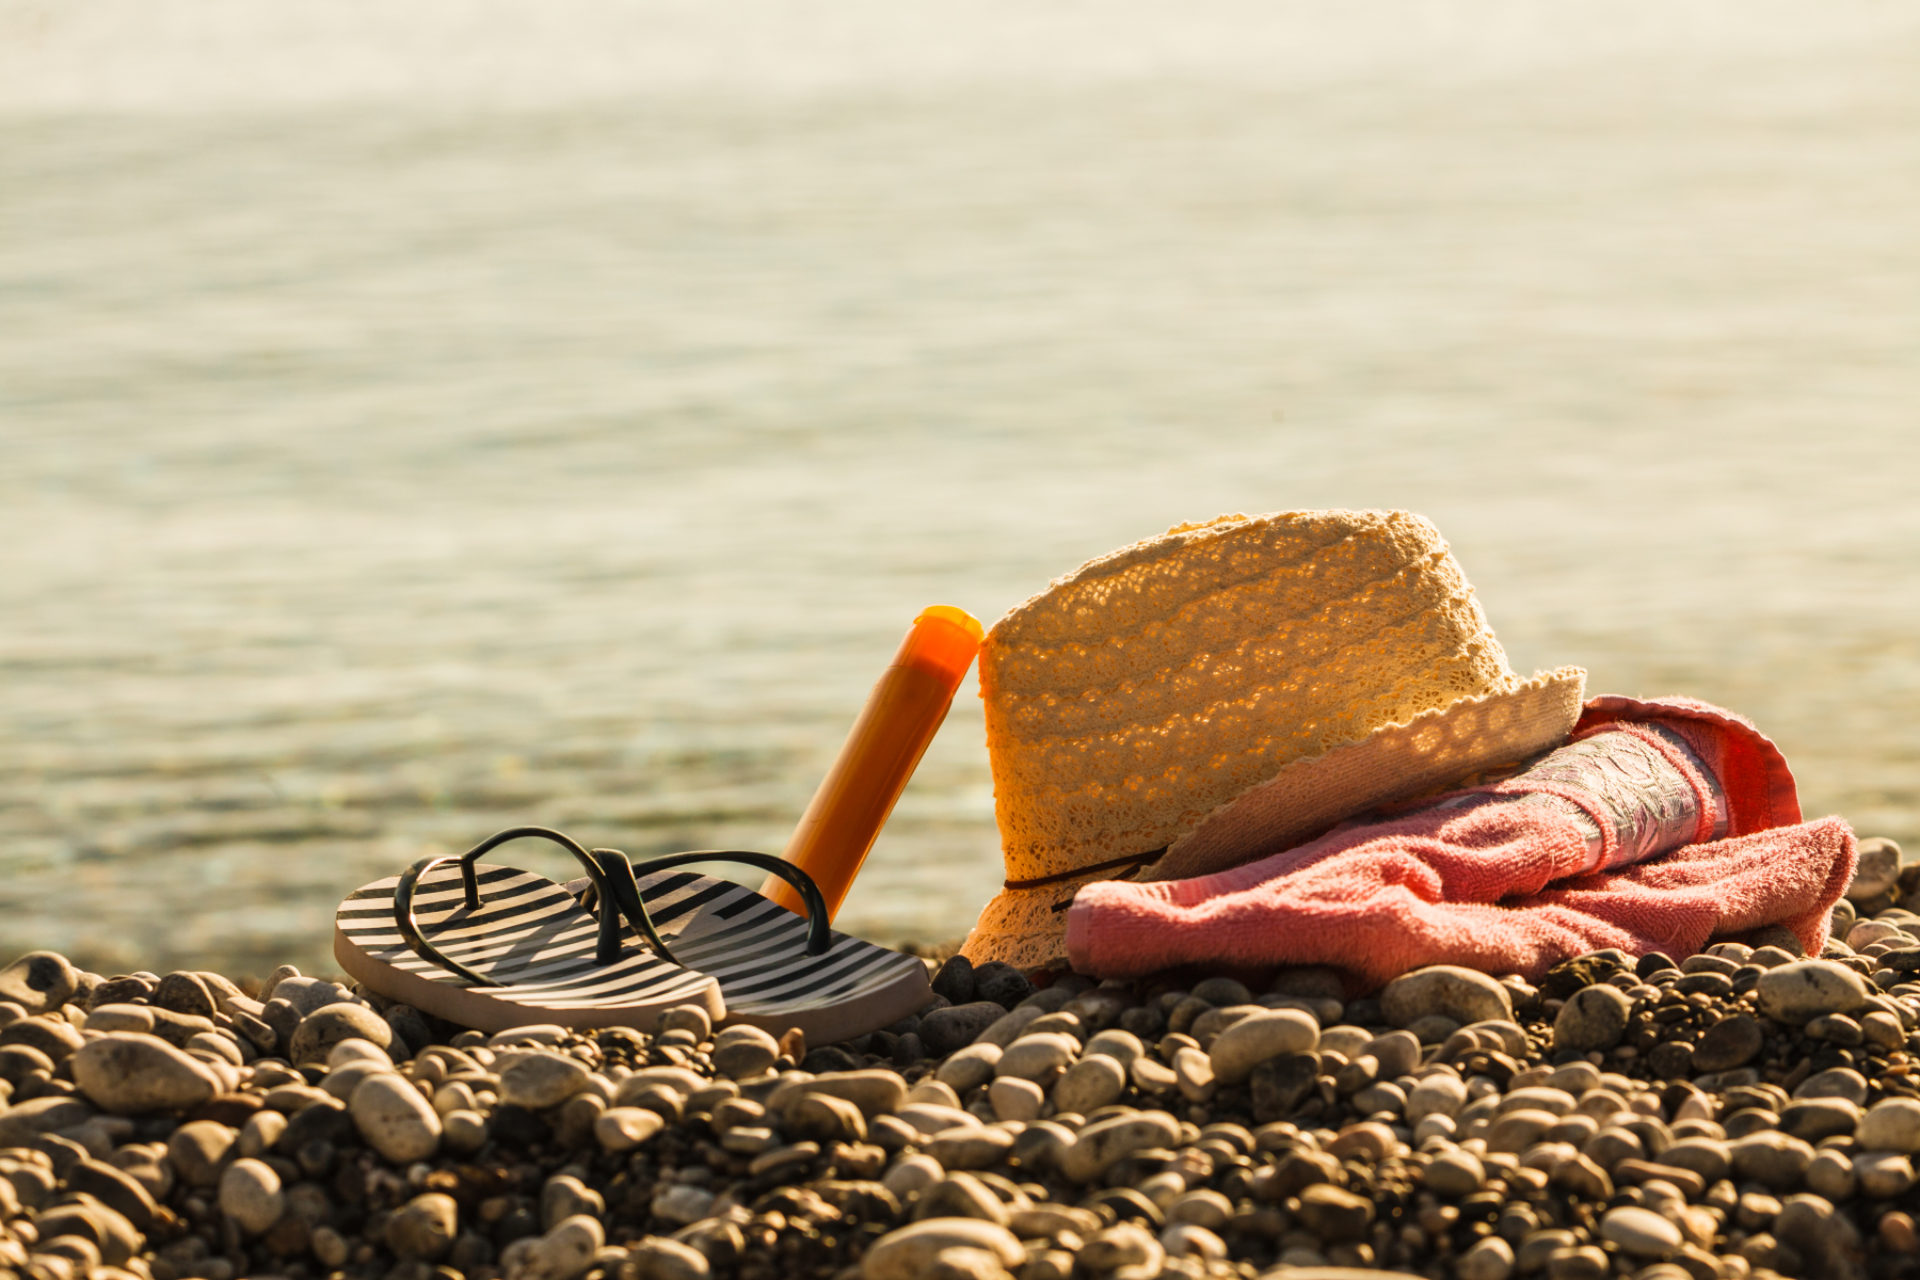 Sol hatt, flipp flopps, solkrem og dykkerbriller på steinettete strand. Bilete.